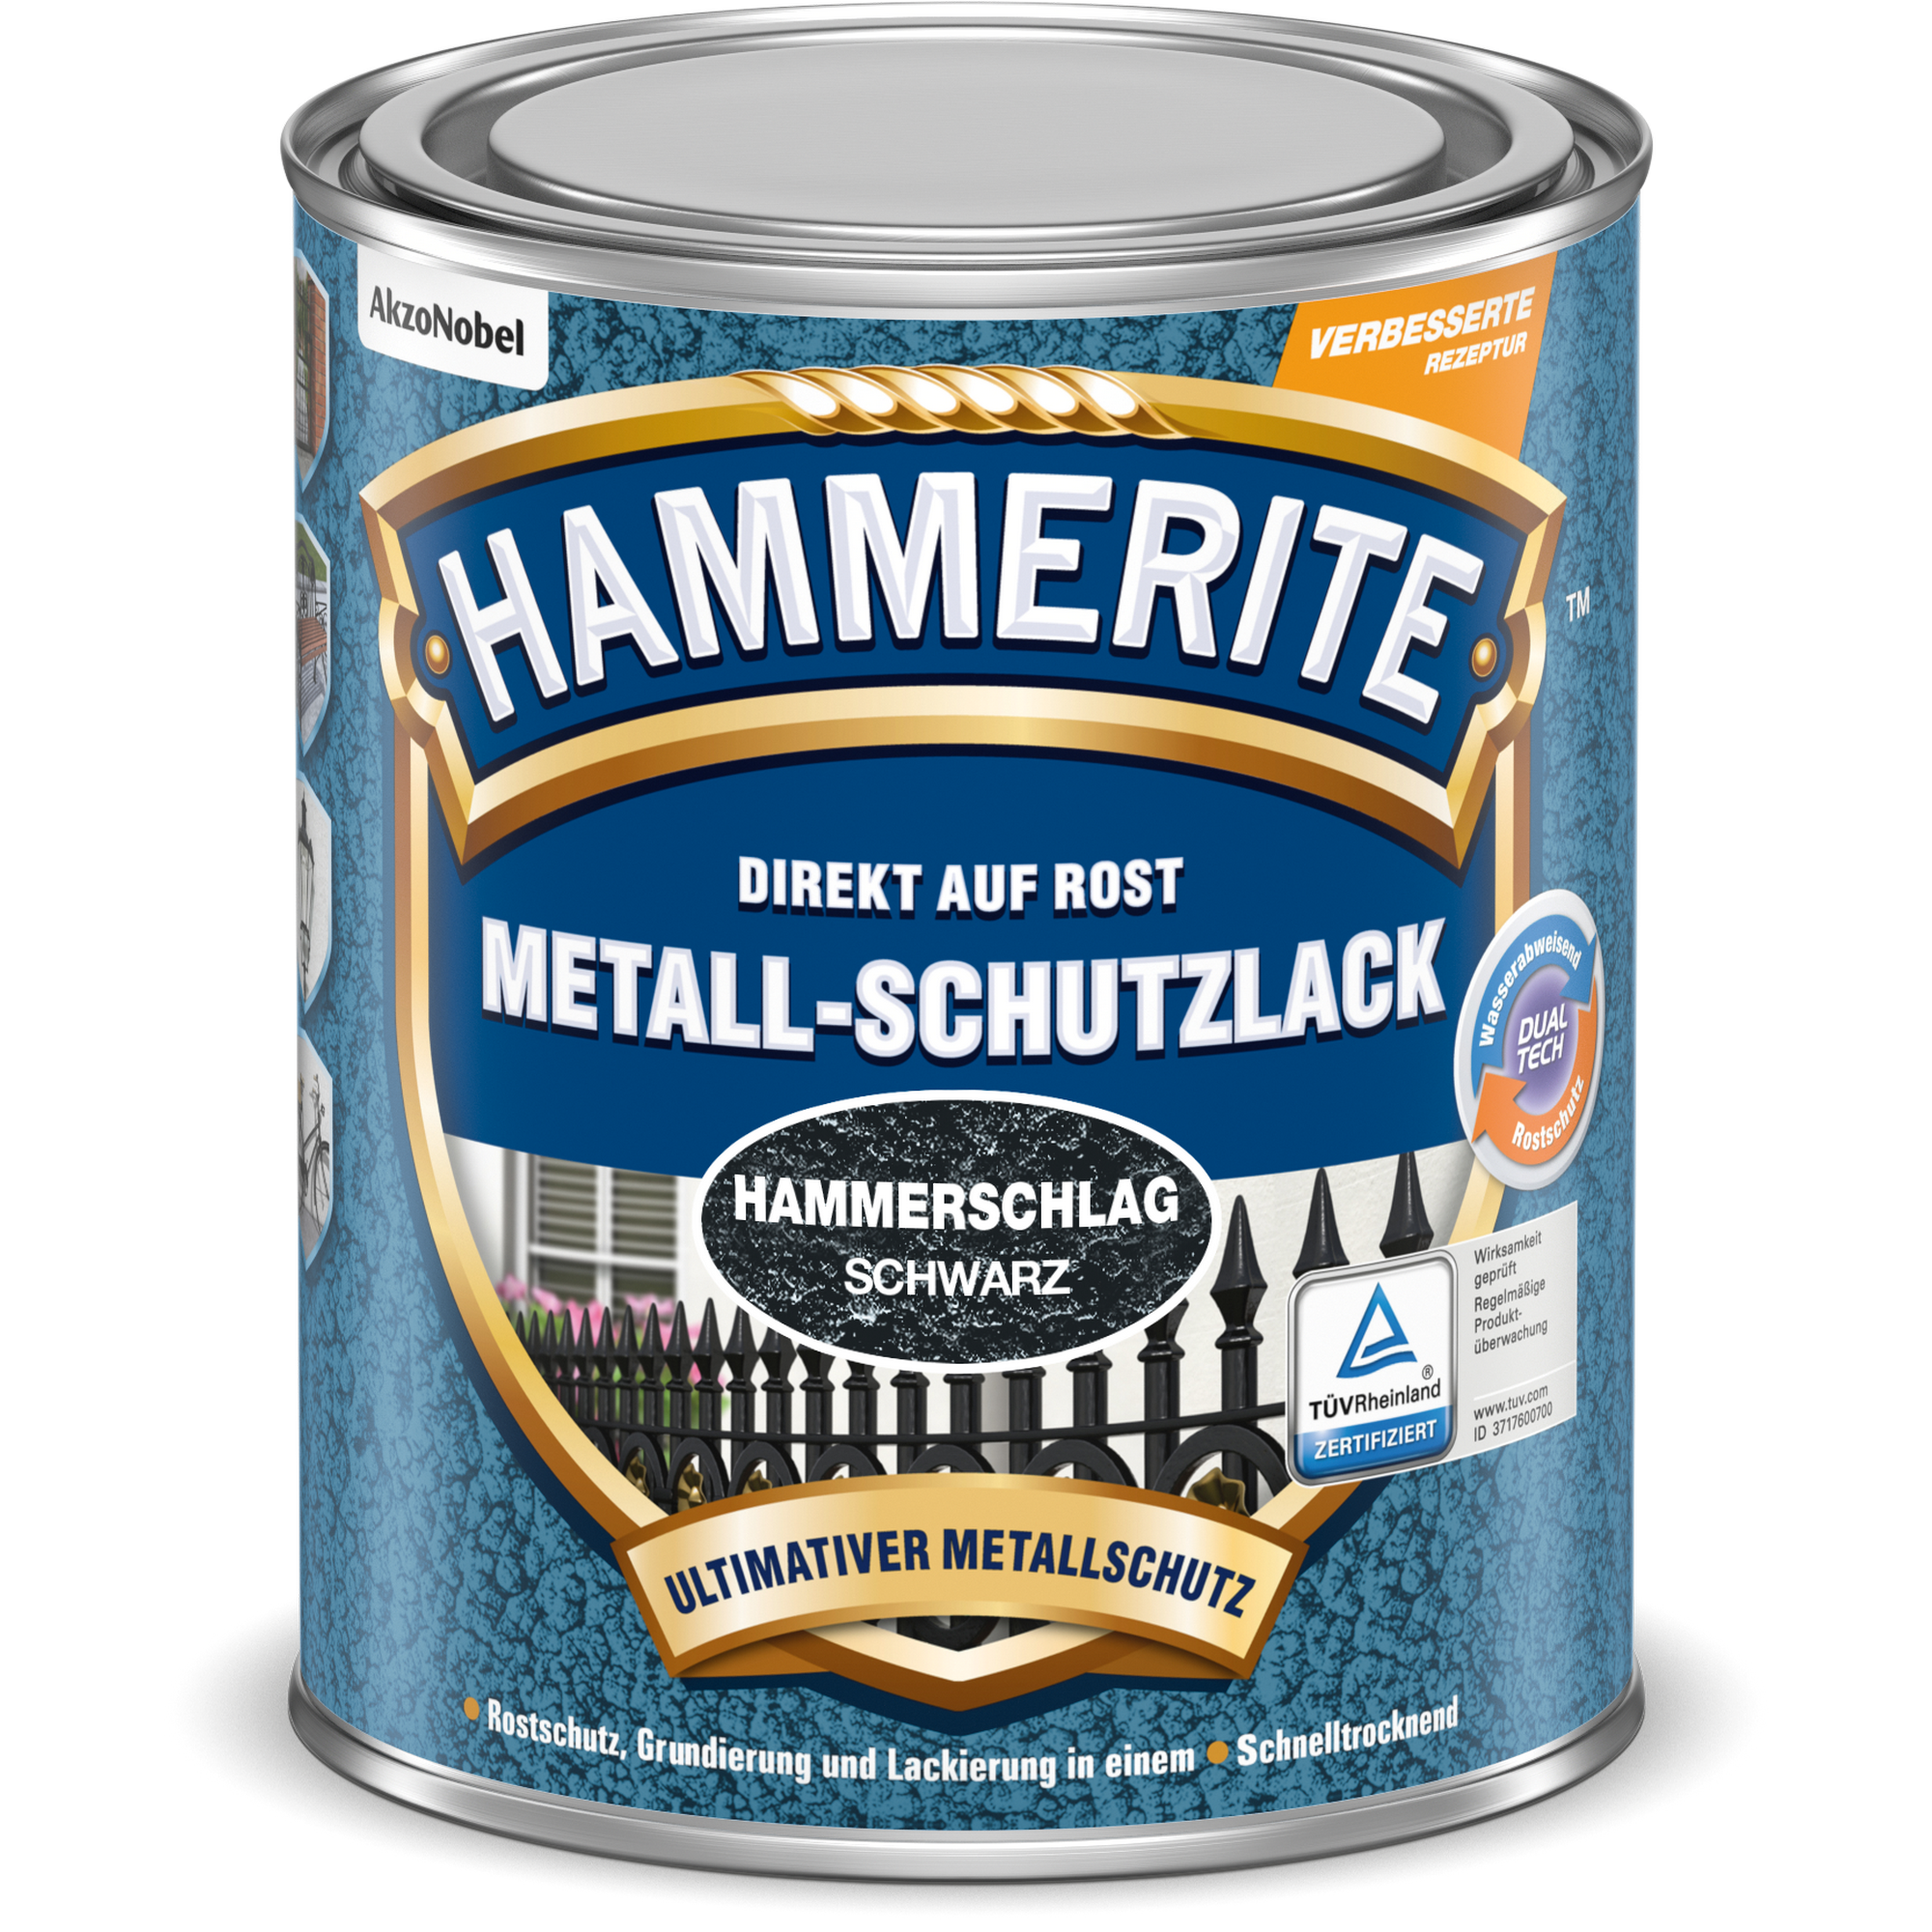 Metallschutzlack Hammerschlag-Effekt schwarz 2,5 l + product video